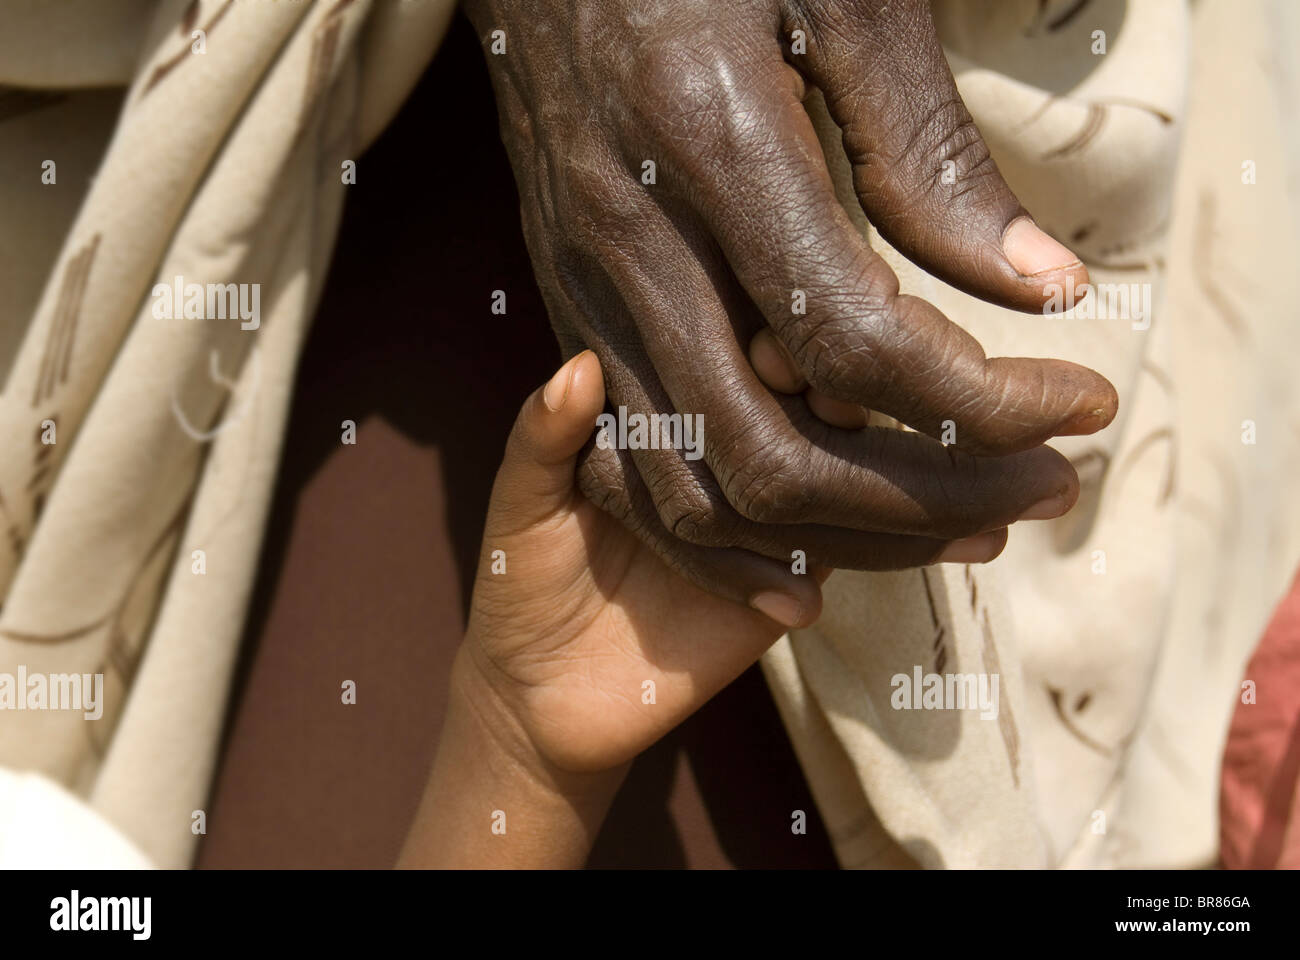 Un enfant tient la main de sa mère dans les files d'attente pour l'alimentation à un camp de personnes déplacées, la Somalie. Banque D'Images